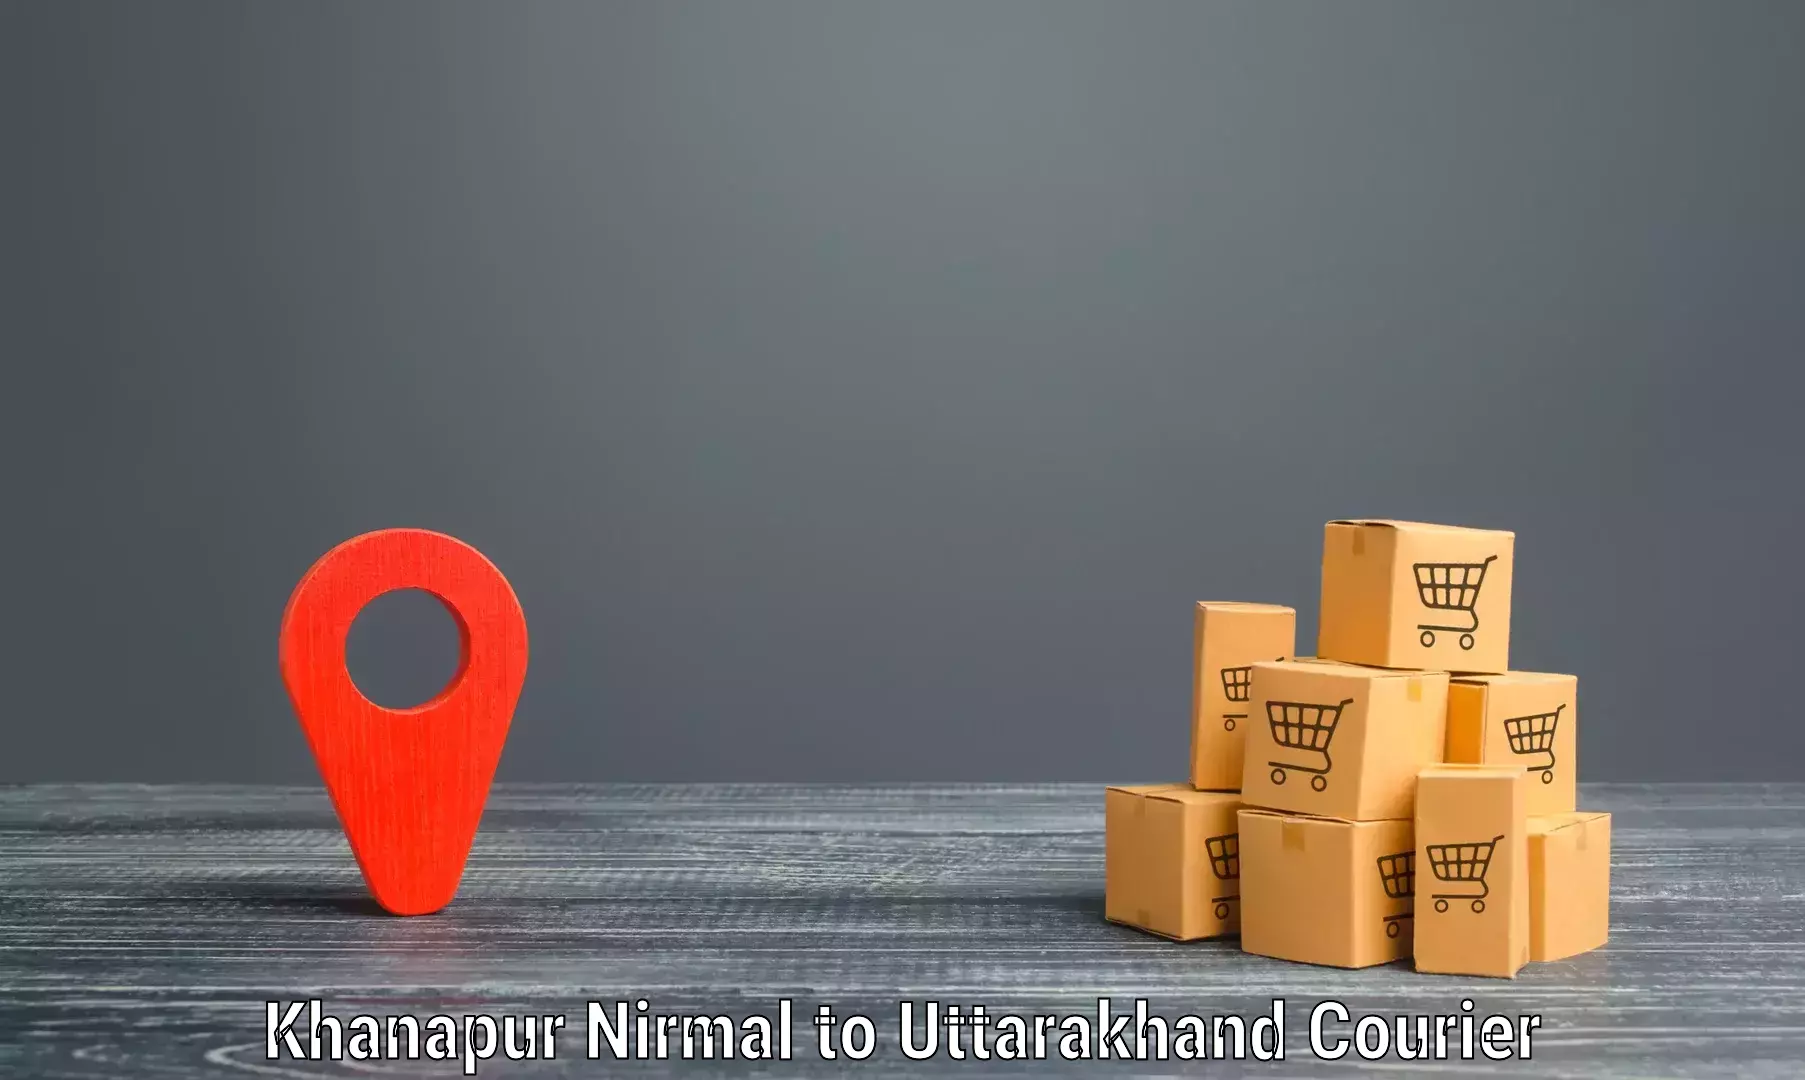 Courier service comparison Khanapur Nirmal to Haridwar